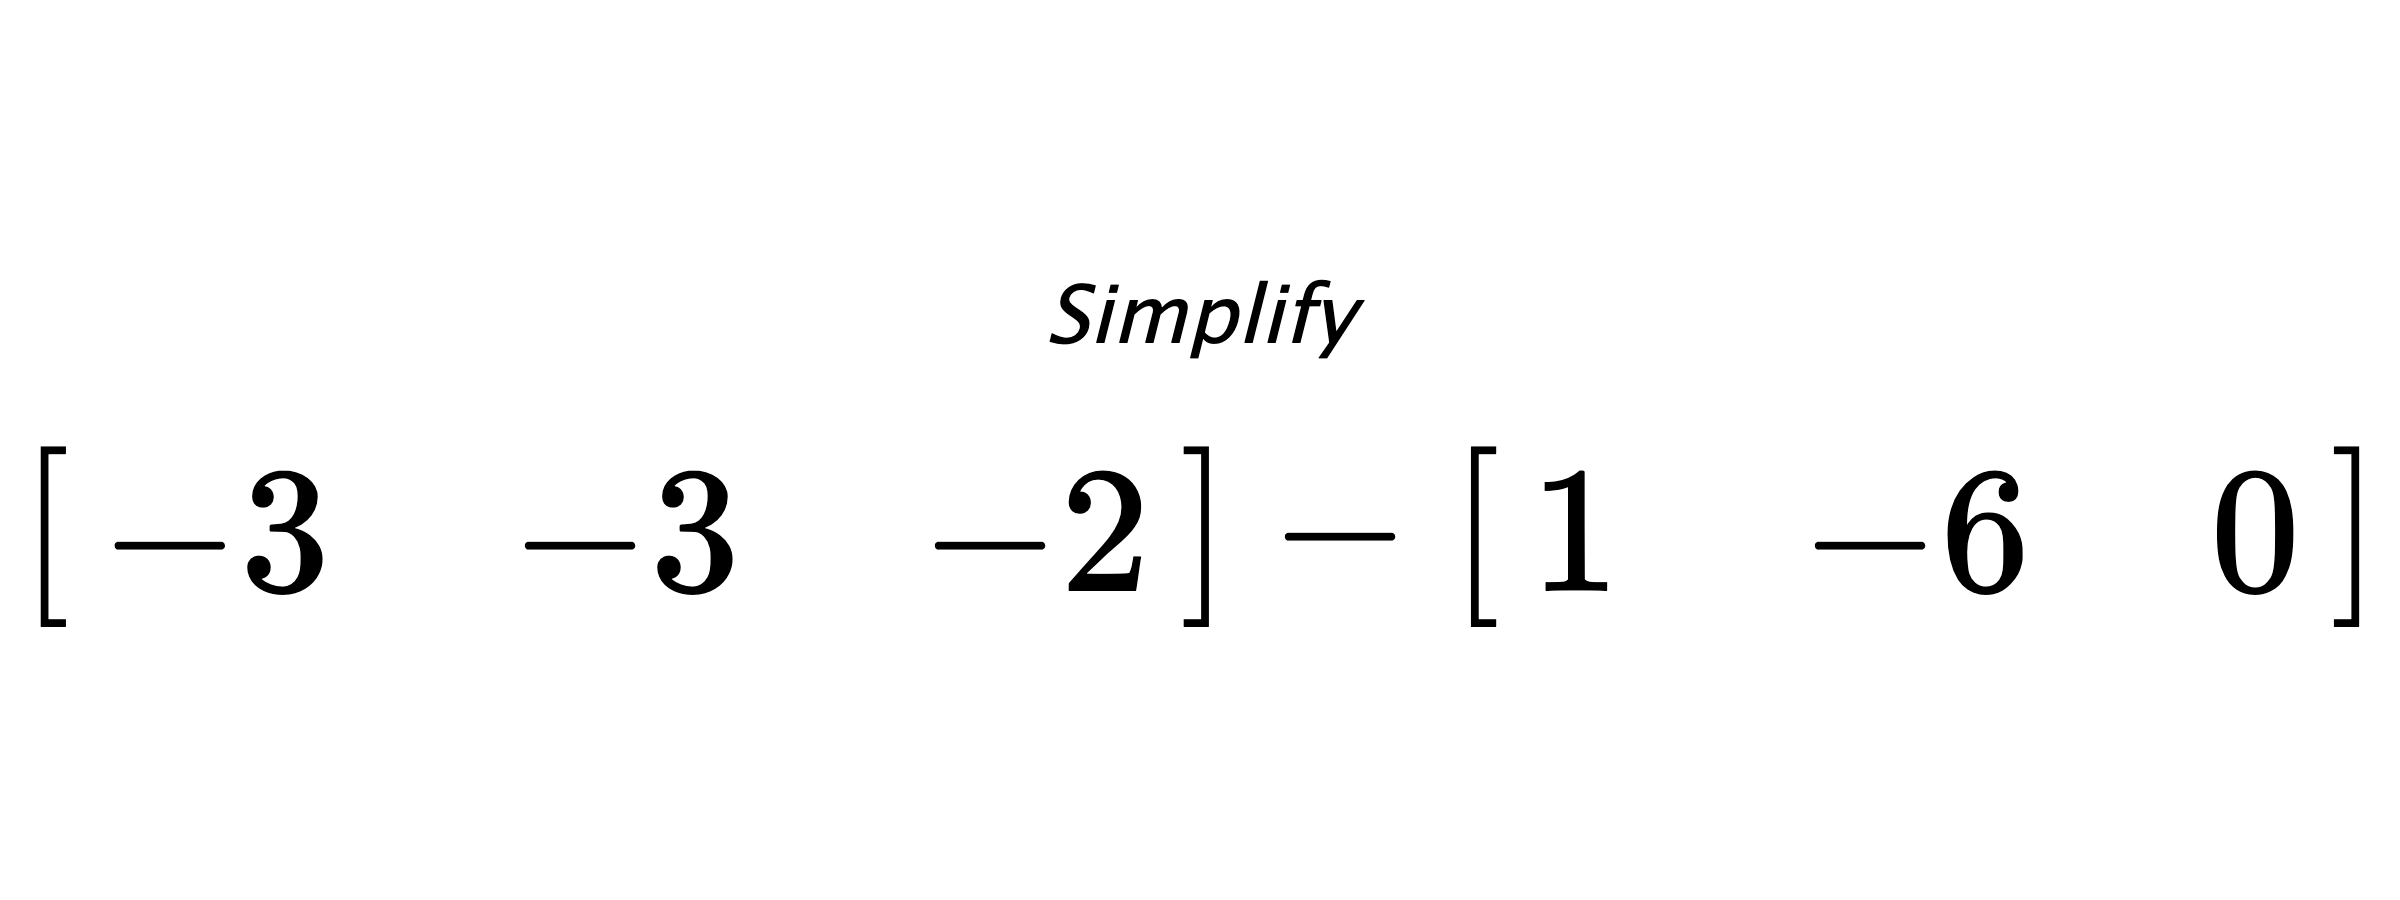 Simplify $ \begin{bmatrix} -3 & -3 & -2 \end{bmatrix} - \begin{bmatrix} 1 & -6 & 0 \end{bmatrix} $